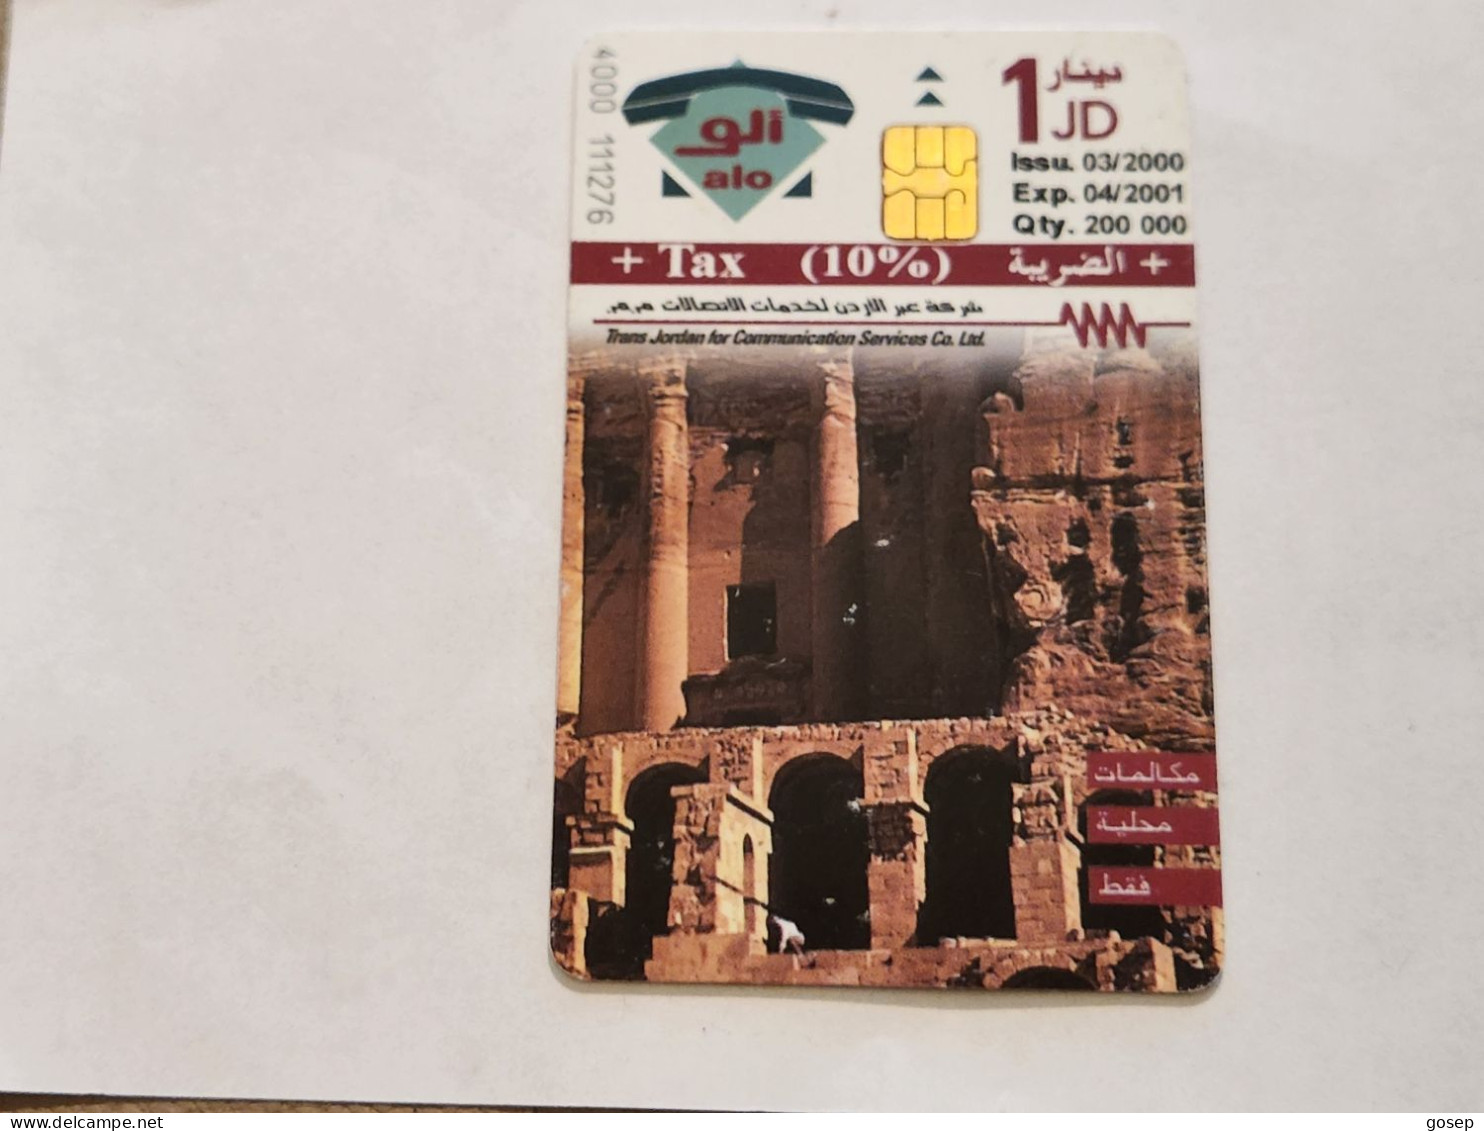 JORDAN-(JO-ALO-0078)-Petra-The Rose City4-(198)-(4000-111276)-(1JD)-(04/2001)-used Card+1card Prepiad Free - Jordanien